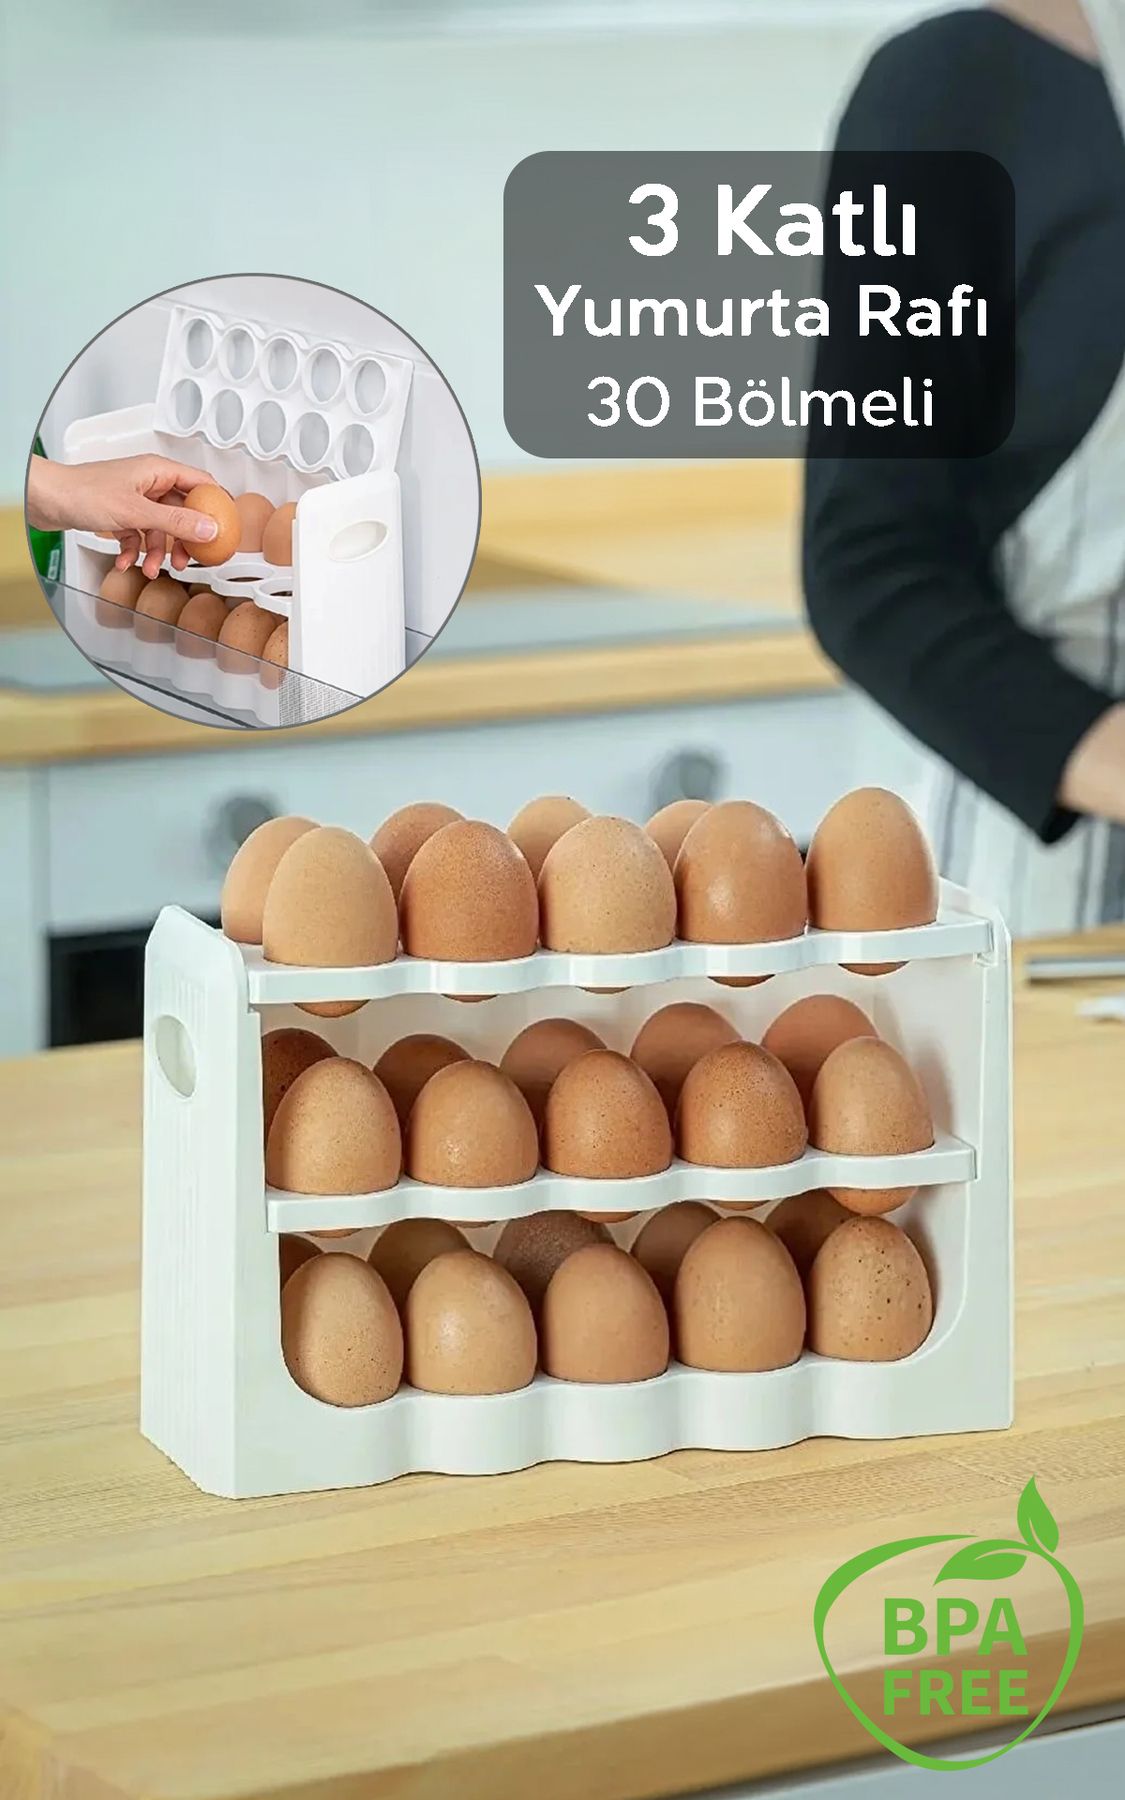 Meleni Home 3 Katlı Yumurta Rafı Buzdolabı Düzenleyici - 30 Bölmeli Buzdolabı Içi Yumurtalık Beyaz